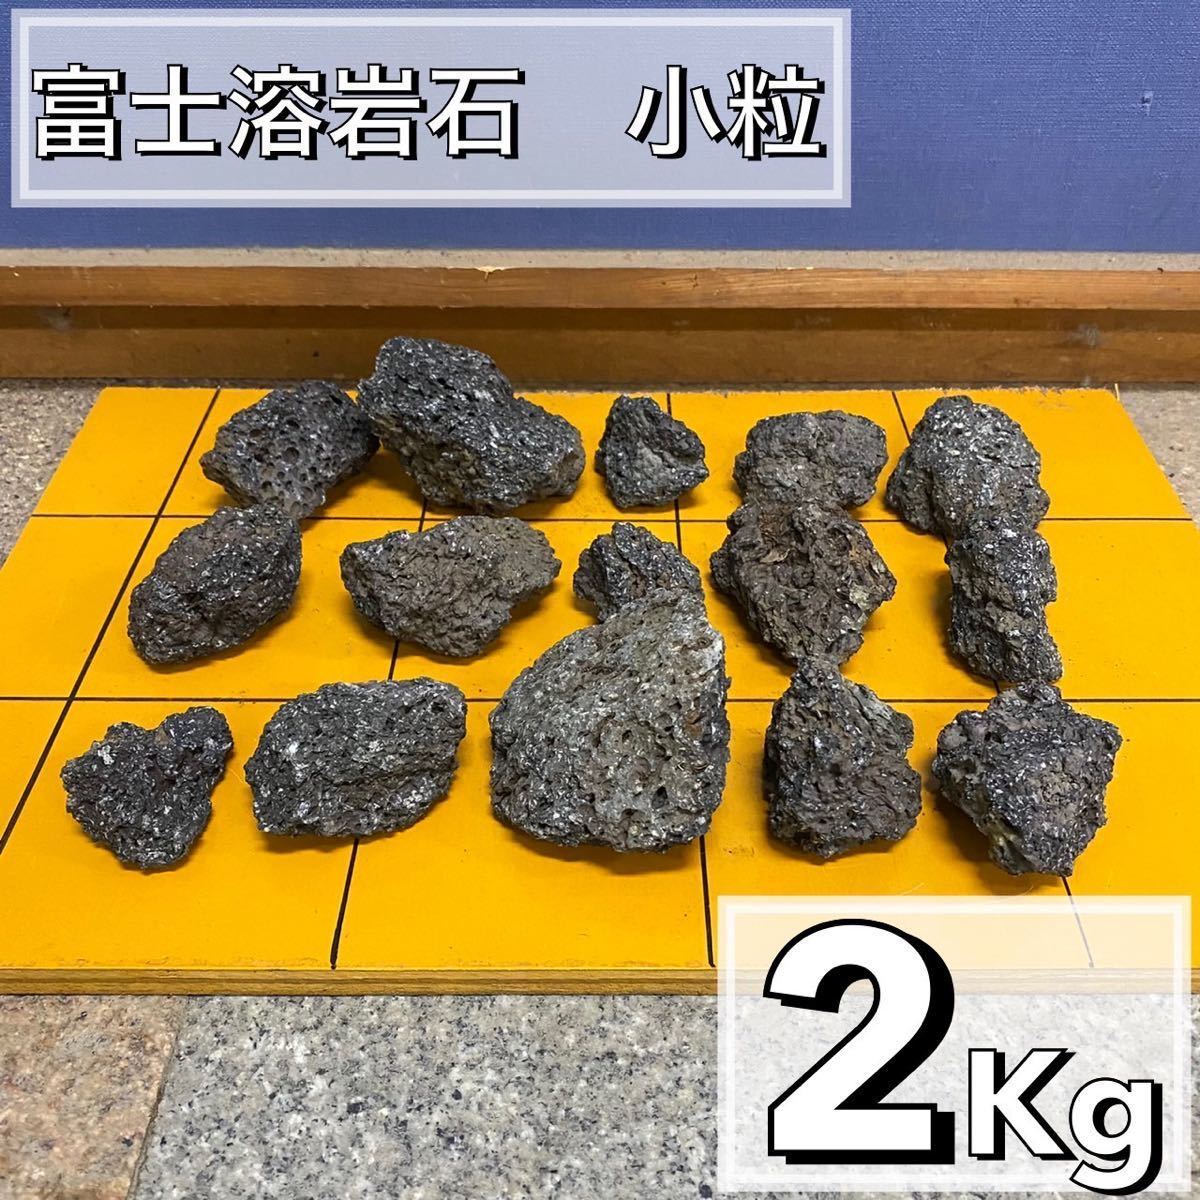 富士溶岩石 2kg アクアリウム 水槽レイアウト アロマ パルダリウム